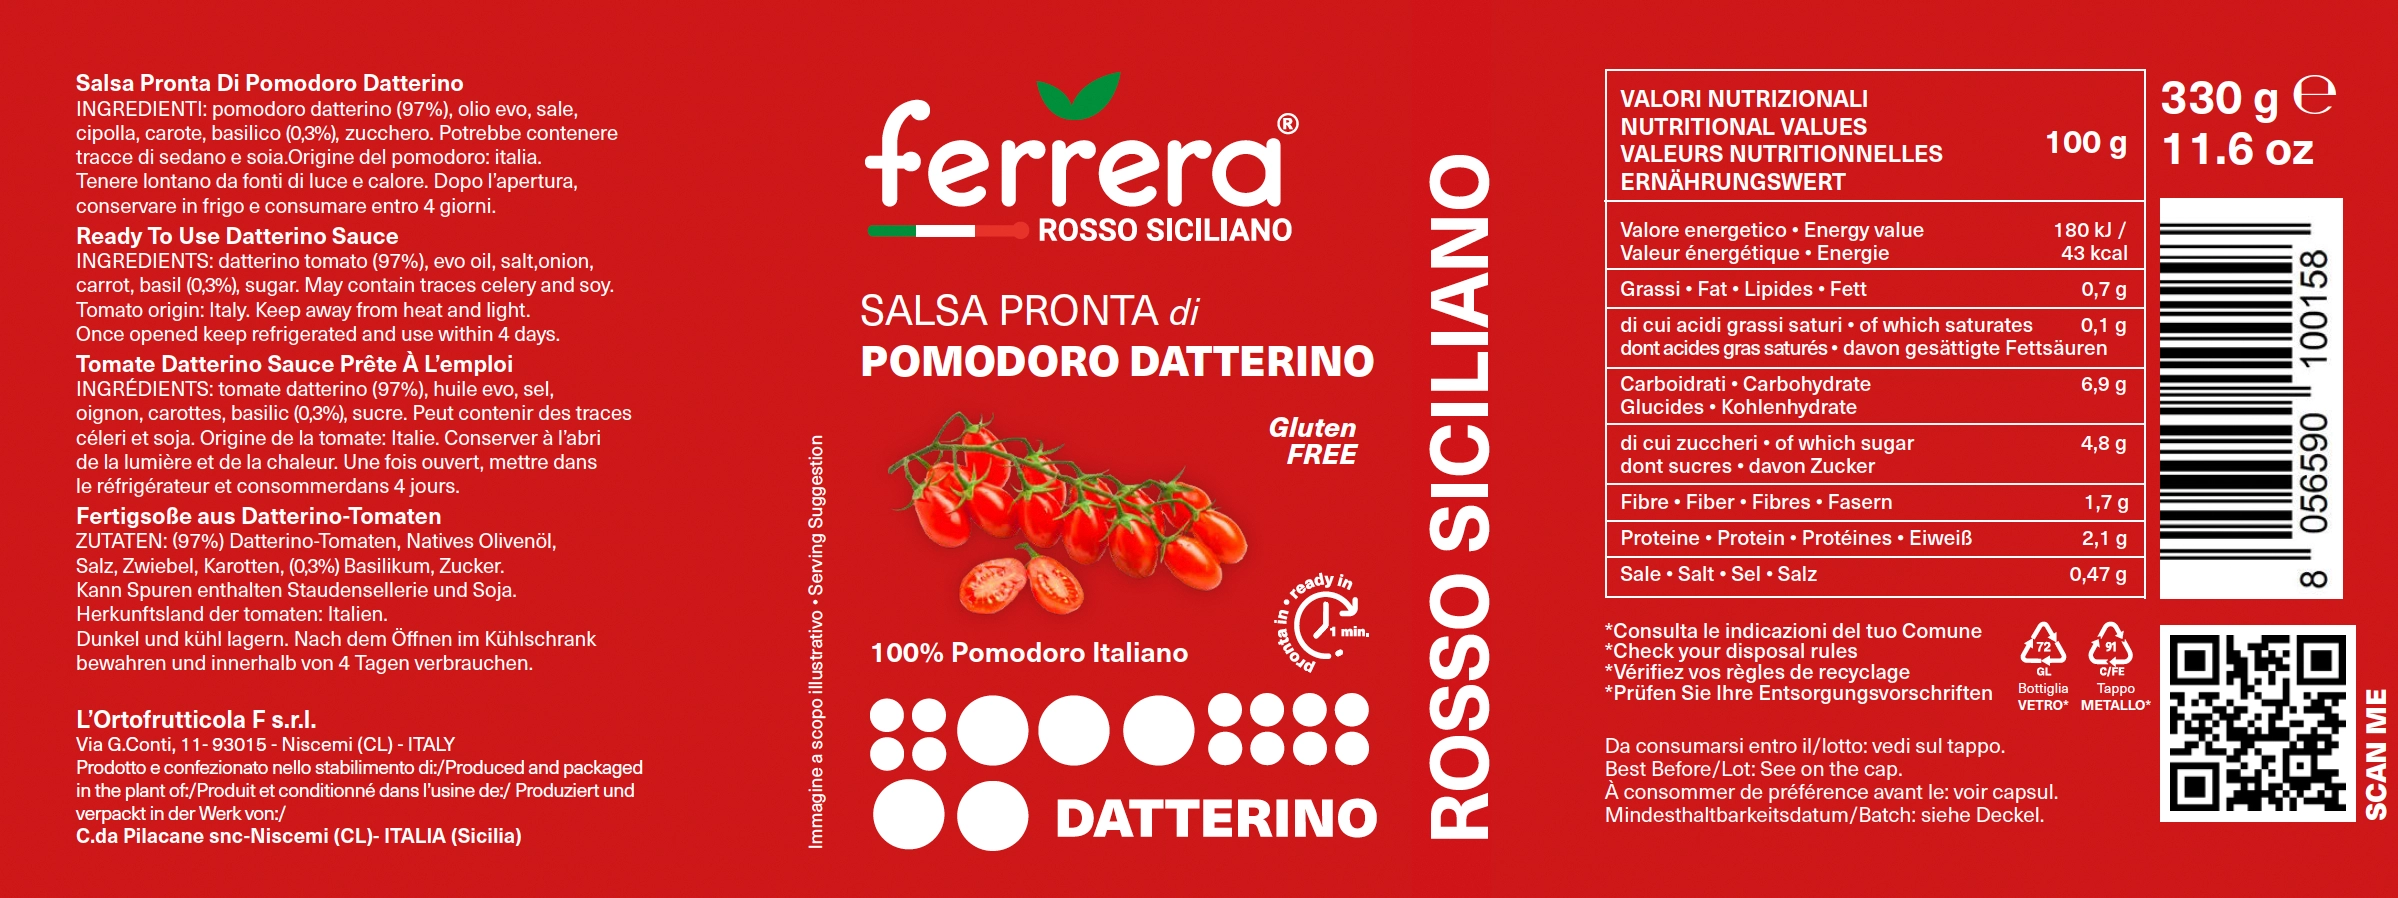 Pomodoro Datterino Ferrera